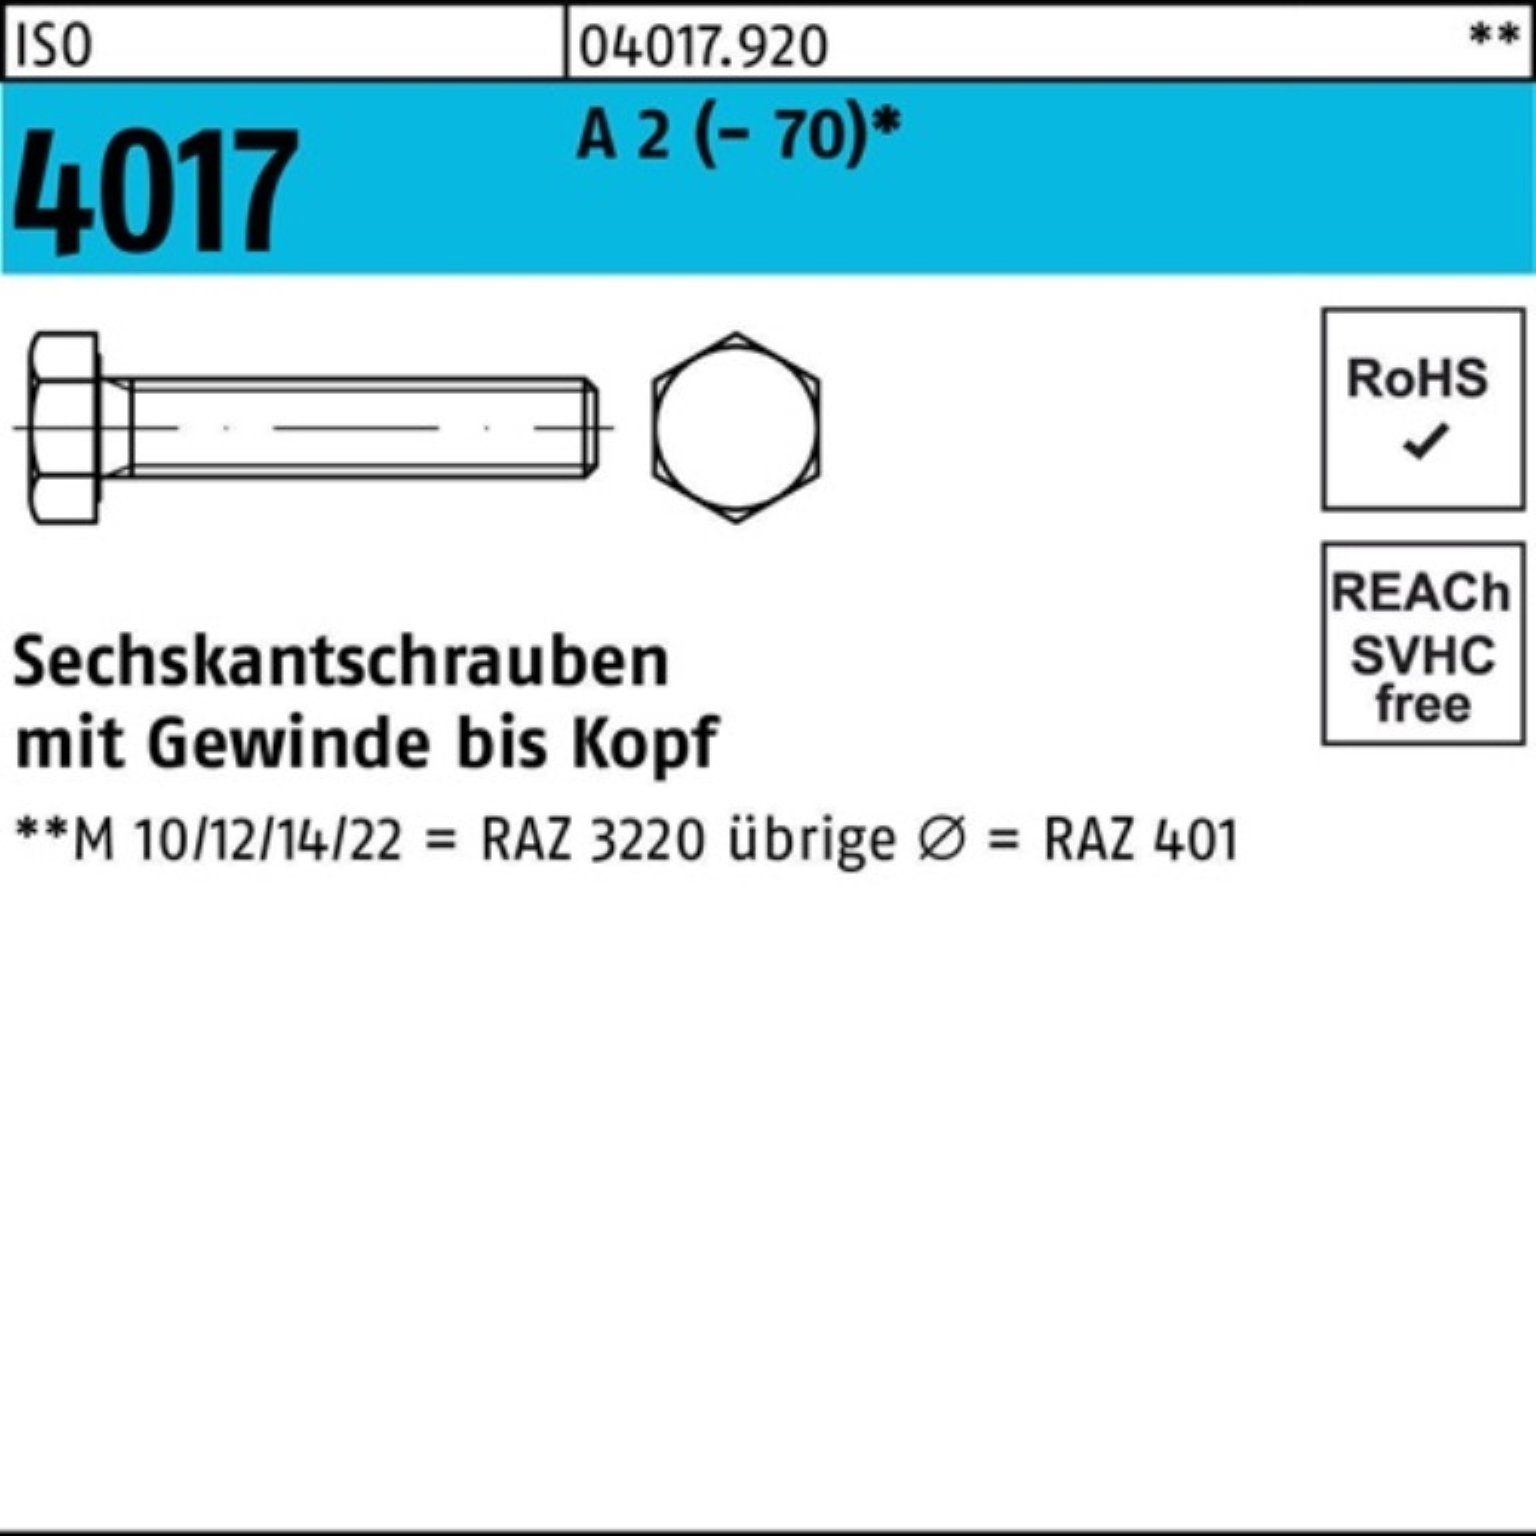 Bufab Sechskantschraube 100er Pack Sechskantschraube ISO 4017 VG M14x 70 A 2 (70) 50 Stück